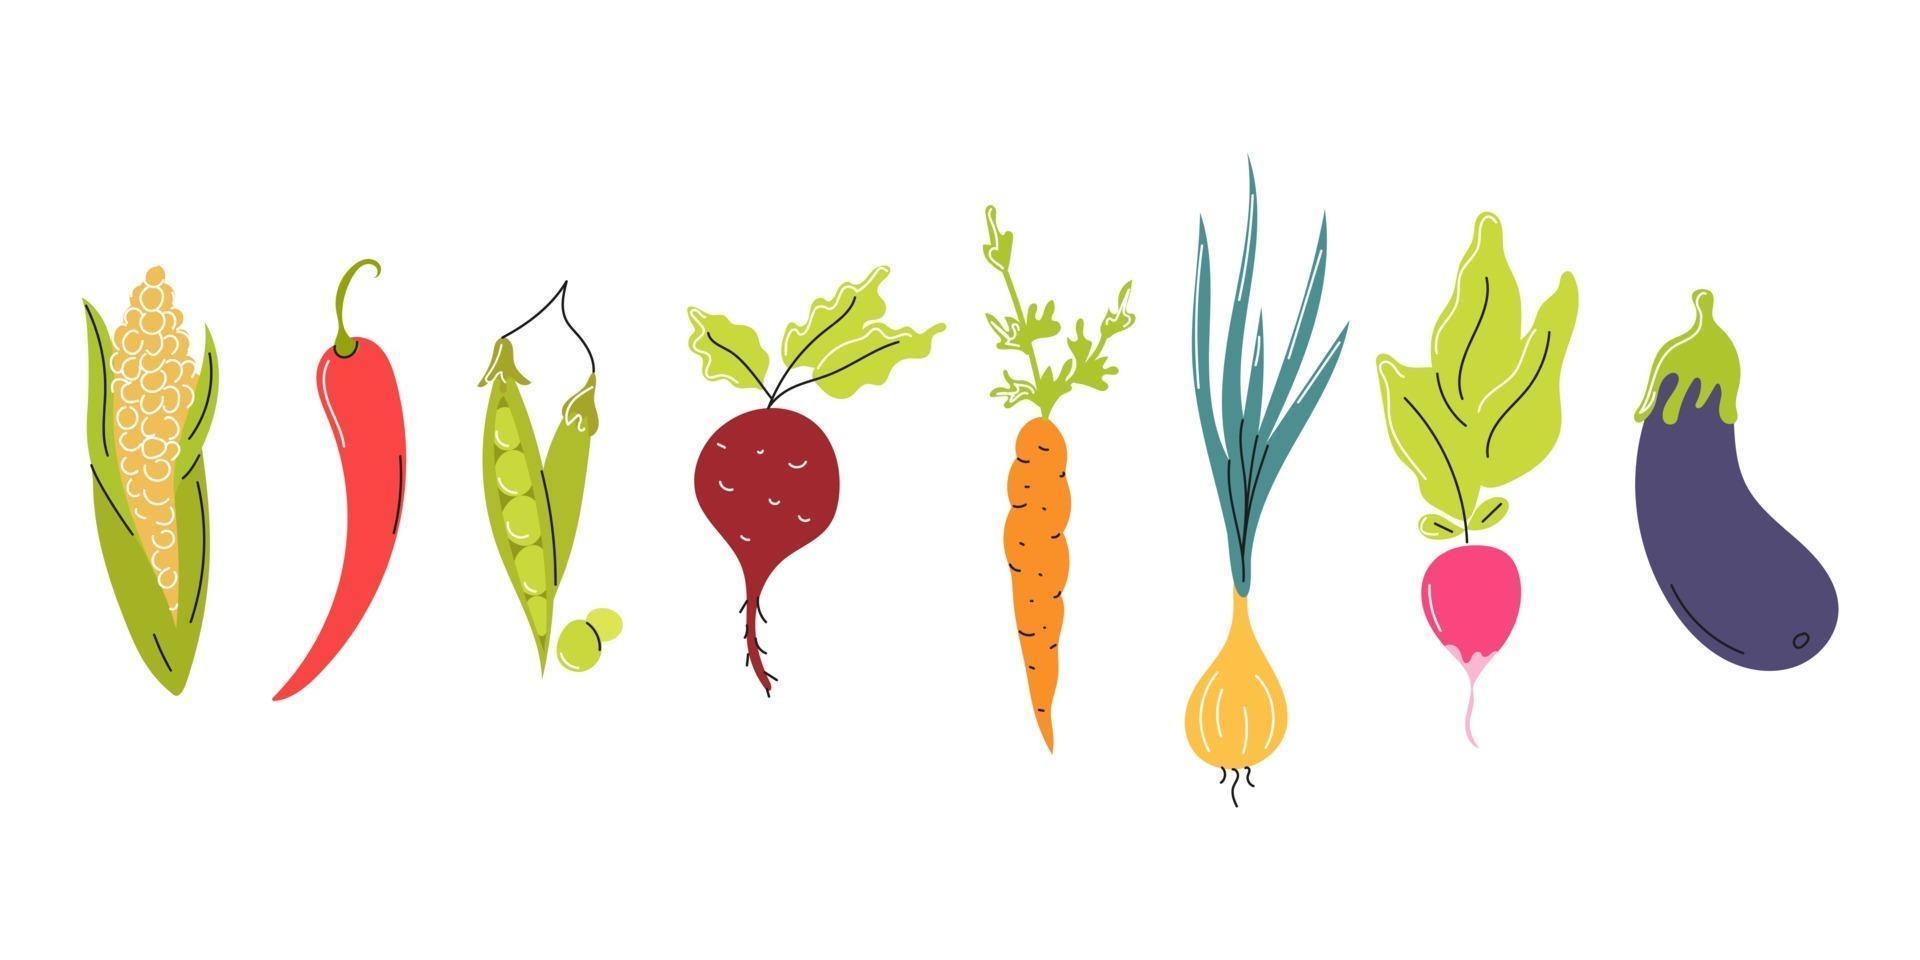 Satz frisches Gemüse in einer Reihe auf einem weißen Hintergrund angeordnet. natürliche Nahrung, Vegetarismus. Vektor flaches Bild, Symbol